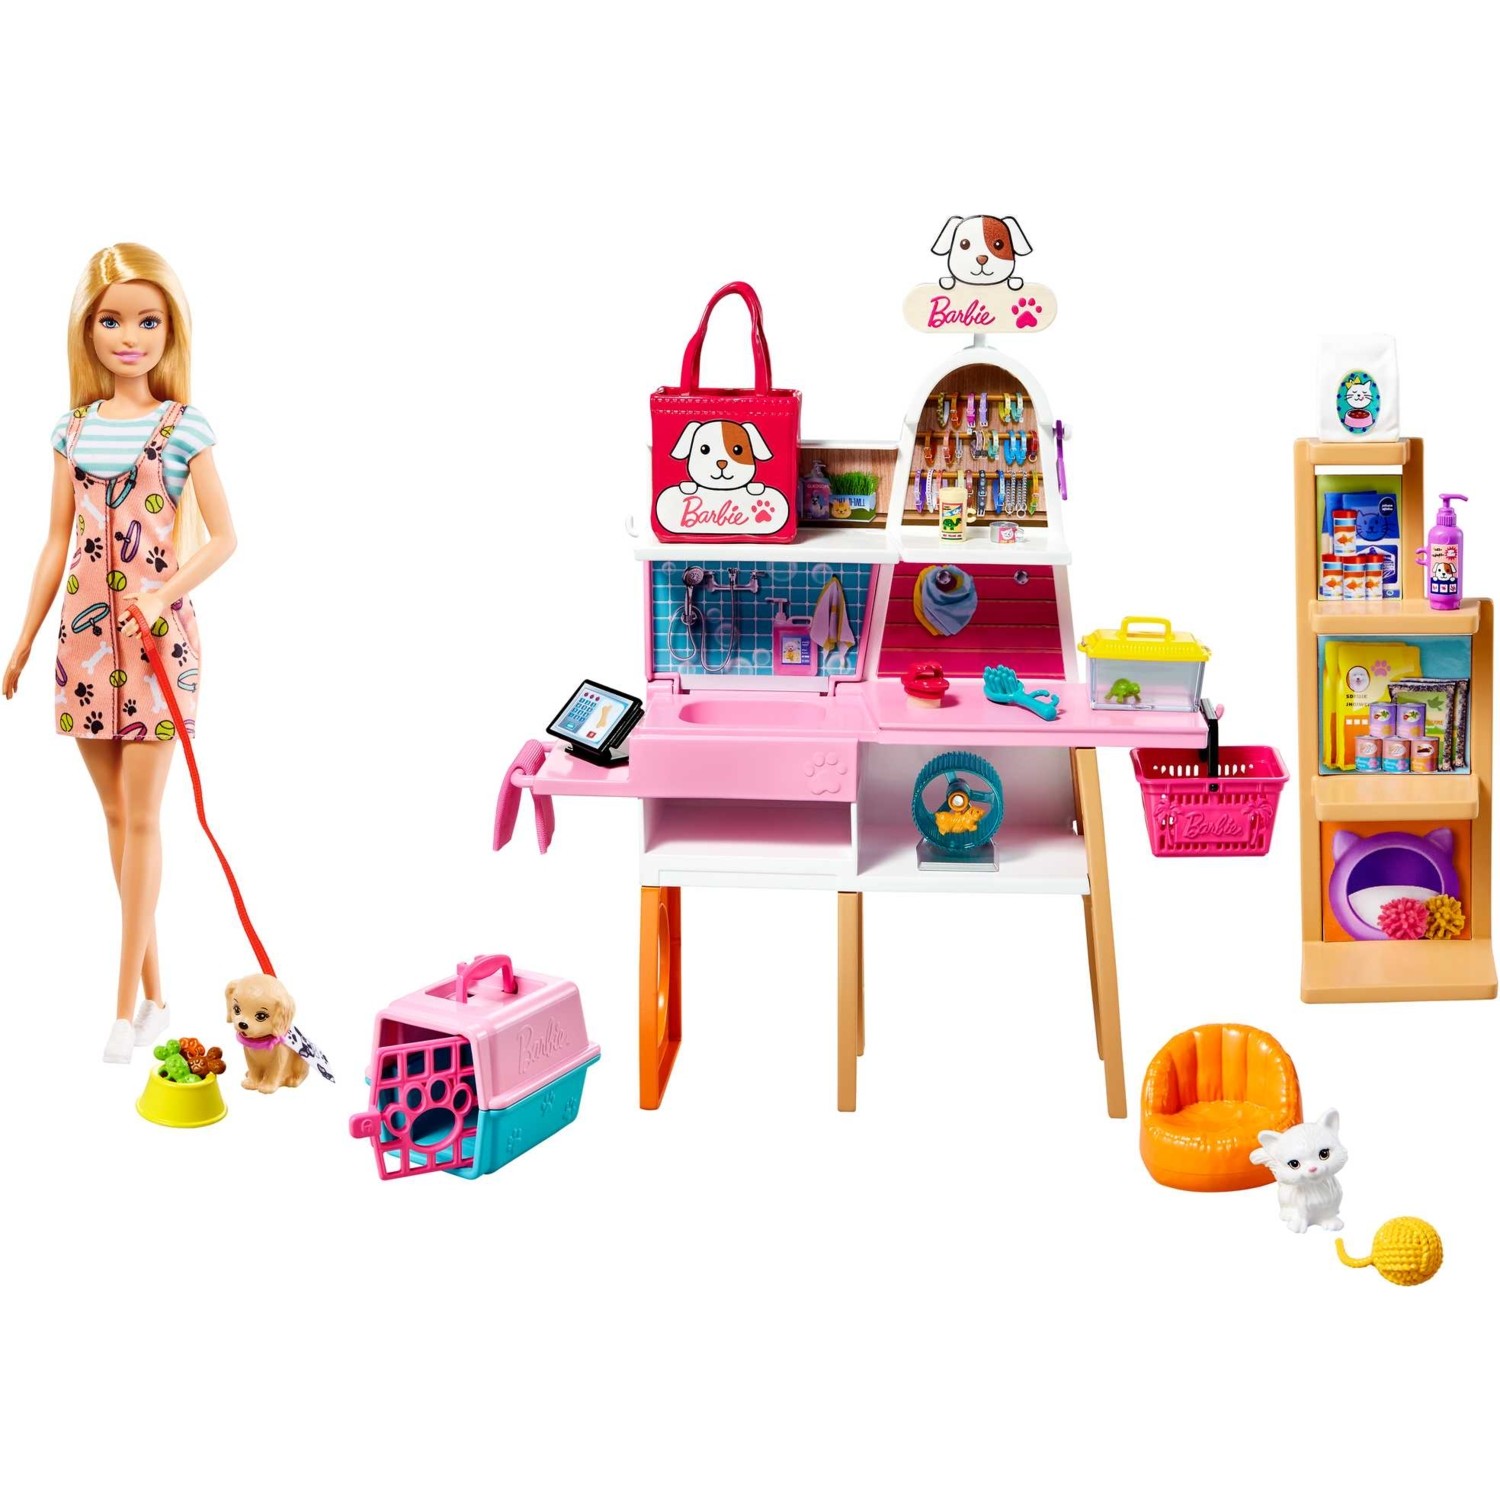 Игровой набор Barbie Pet Boutique игровой набор с барби и аксессуарами кукла барби для девочки барби со съемными нарядами кукла набор аксессуаров для барби